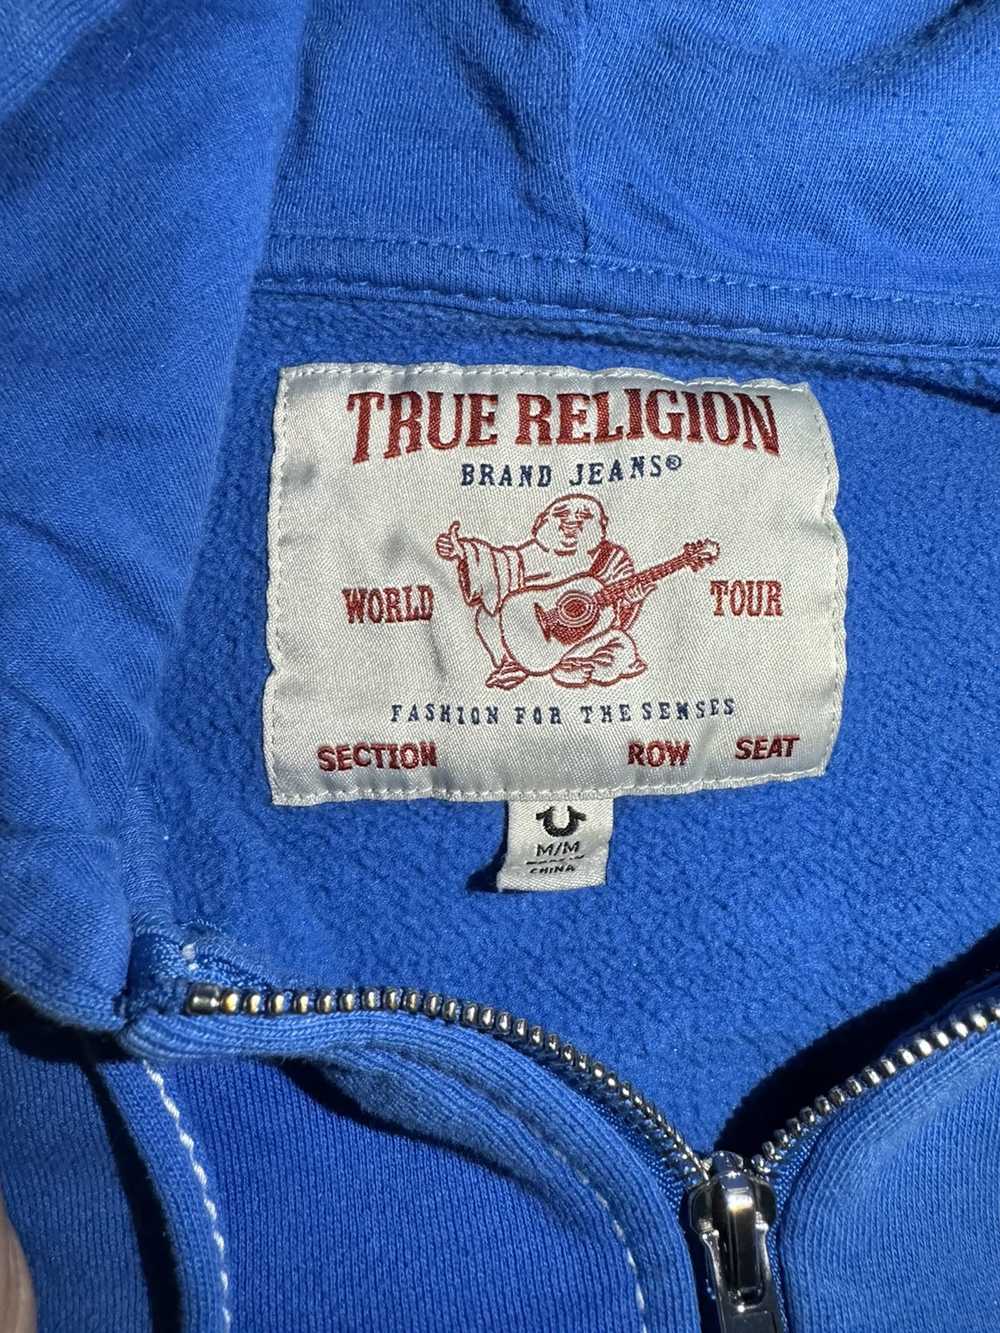 True Religion True religion full zip jacket - image 3